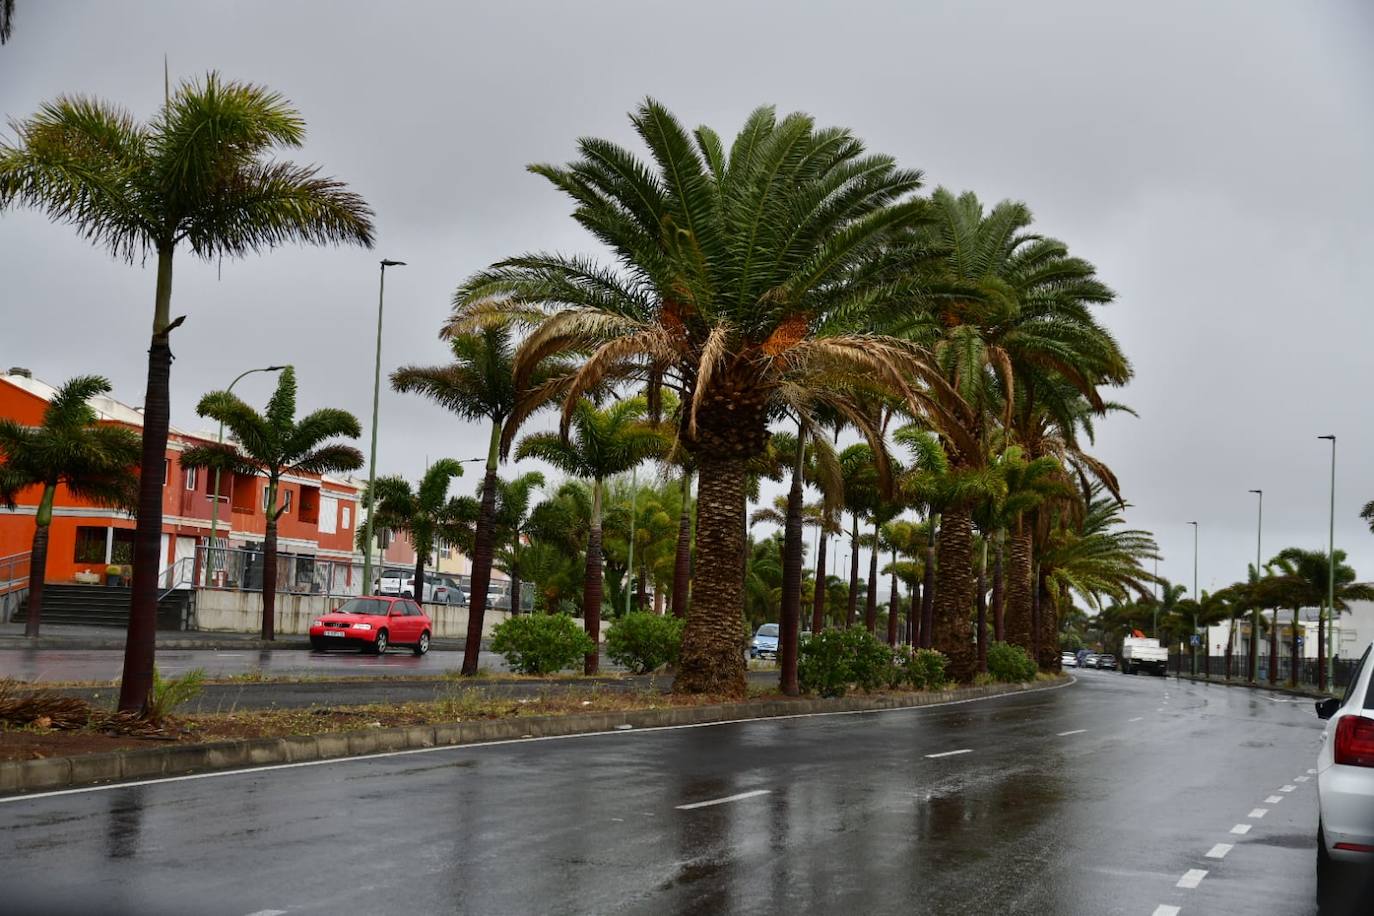 Imagen principal - El sureste de Gran Canaria recibe el mal tiempo con lluvia y viento